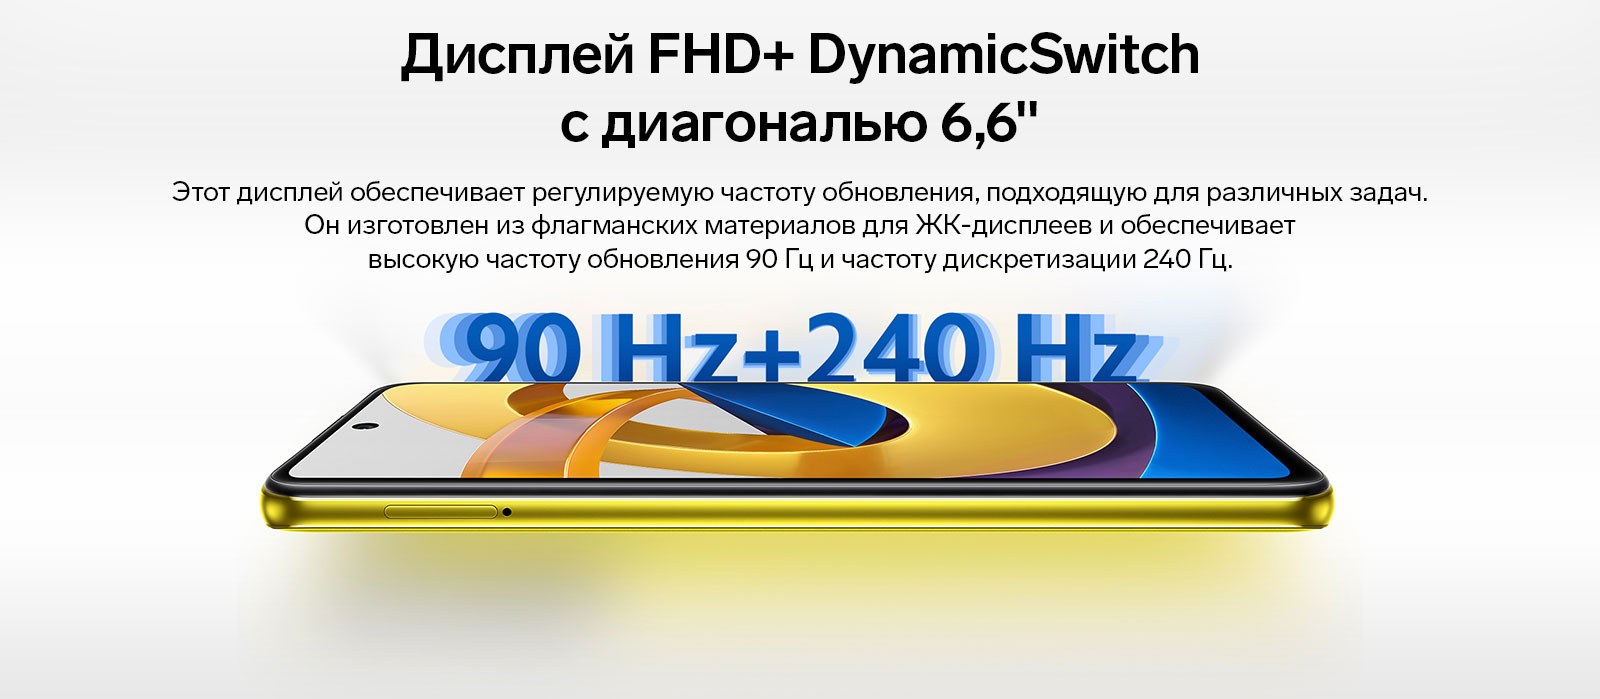 Дисплей FHD+ DynamicSwitch с диагональю 6,6